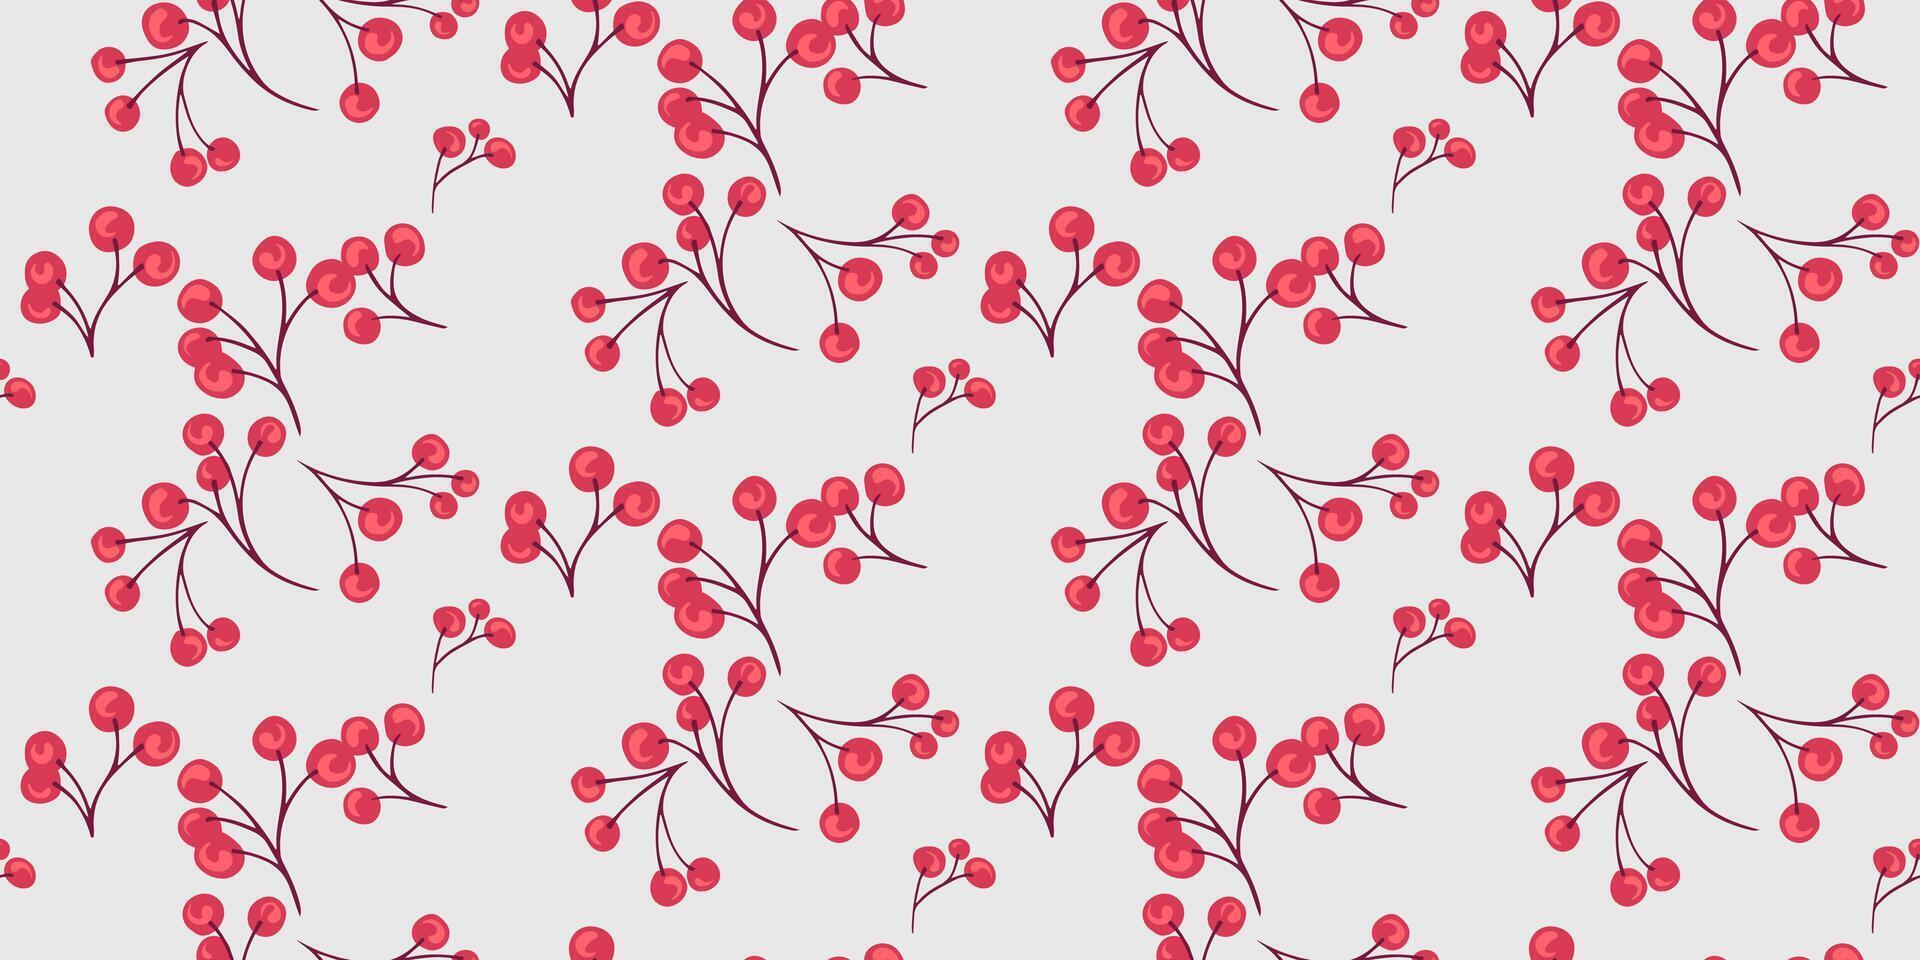 gemakkelijk hand- getrokken takken met rood vormen bessen naadloos patroon. abstract jeneverbes, buxus, viburnum, berberis illustratie afdrukken. collage sjabloon voor ontwerp, textiel vector